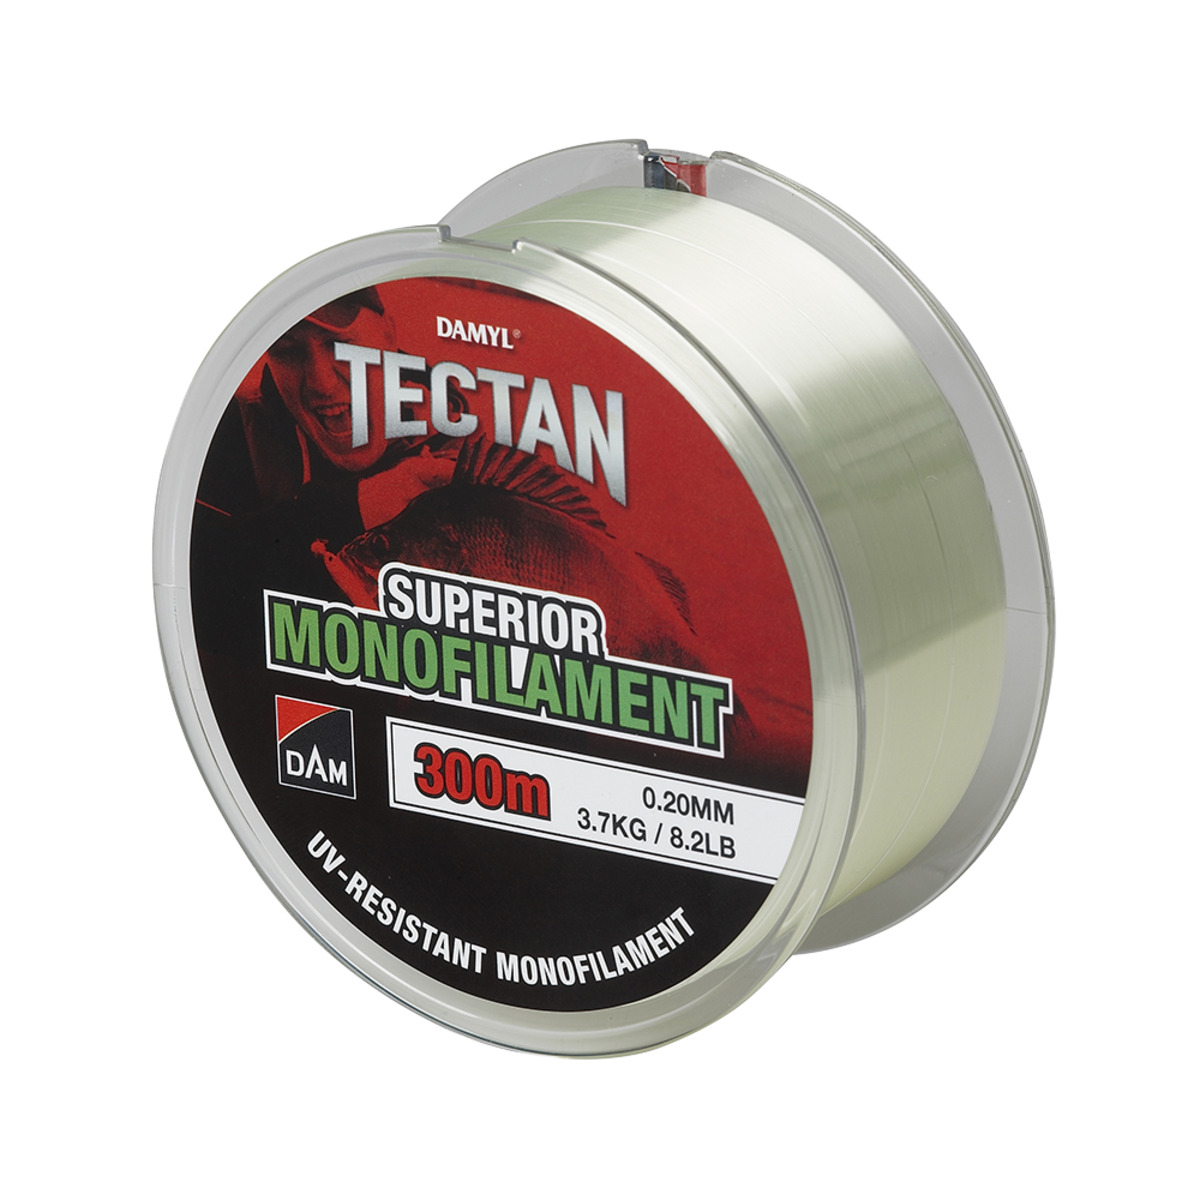 Dam Tectan Superior 300m - 0.40MM 13.3KG 29.3LBS GREEN TRANSPARANT